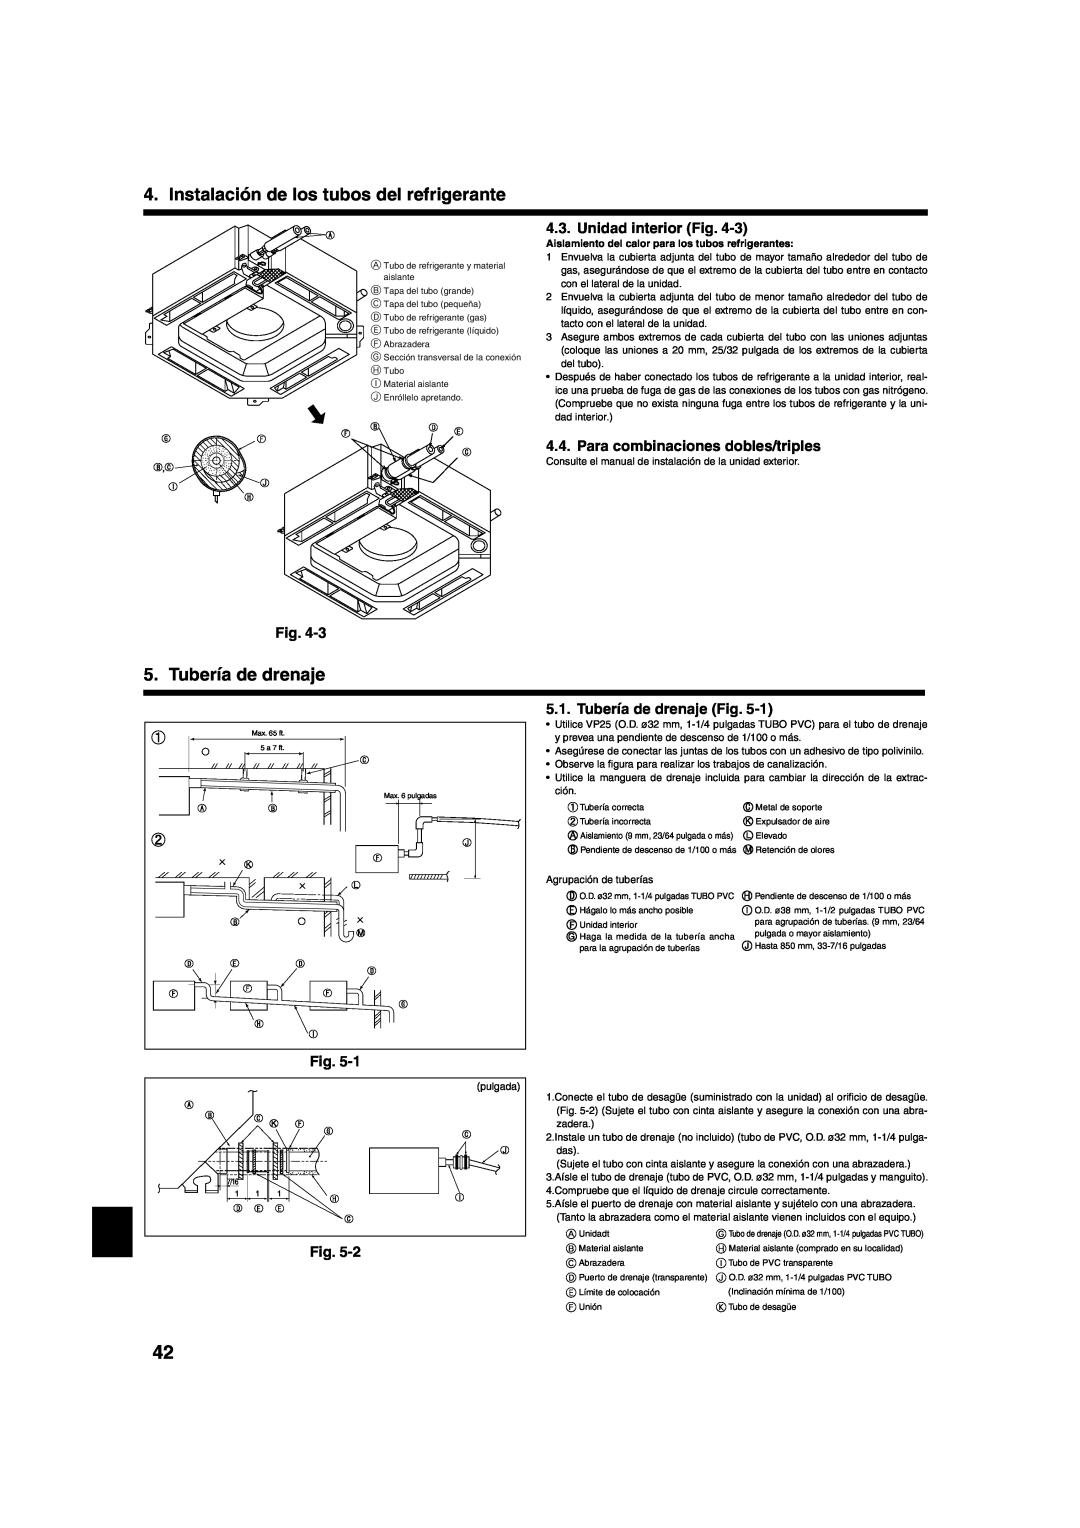 Mitsumi electronic PLA-ABA installation manual Tubería de drenaje, Unidad interior Fig, Para combinaciones dobles/triples 